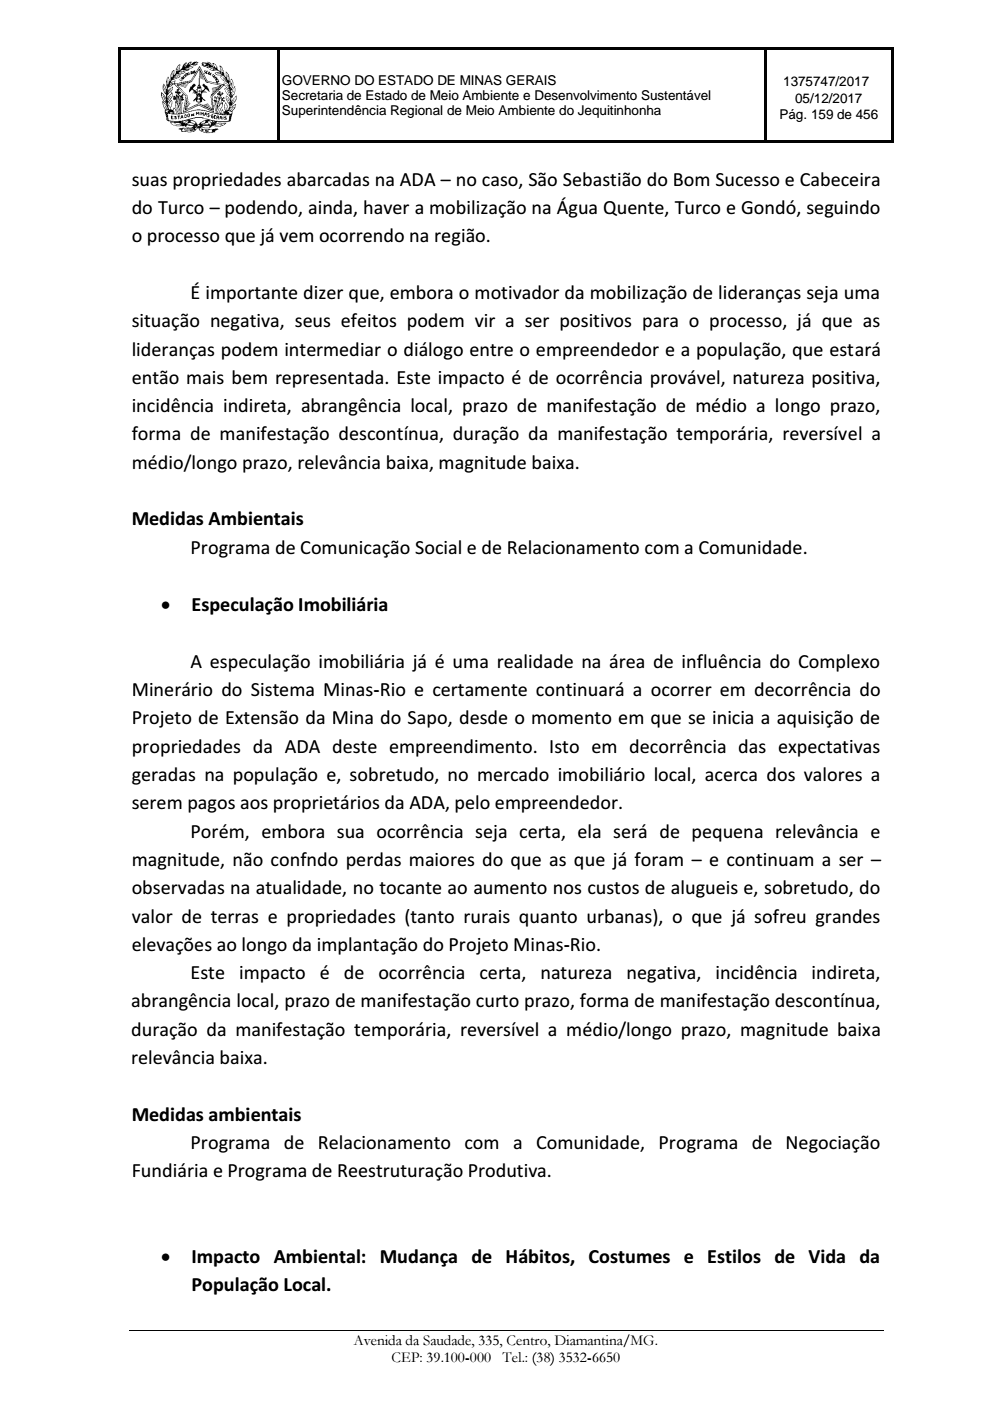 Page 159 from Parecer único da Secretaria de estado de Meio Ambiente e Desenvolvimento Sustentável (SEMAD)